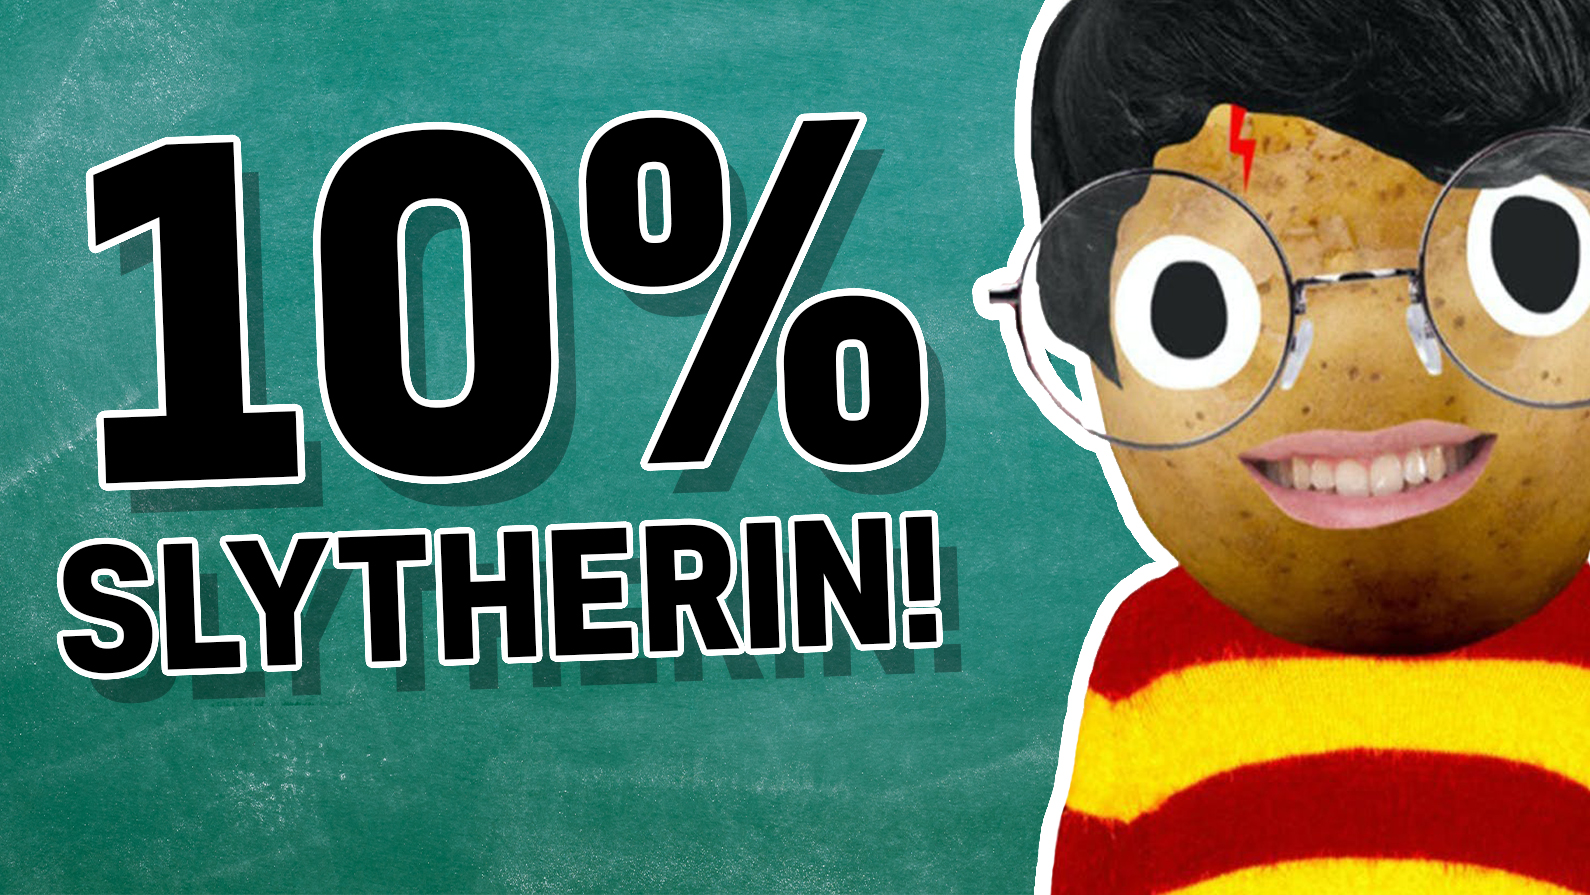 10% Slytherin